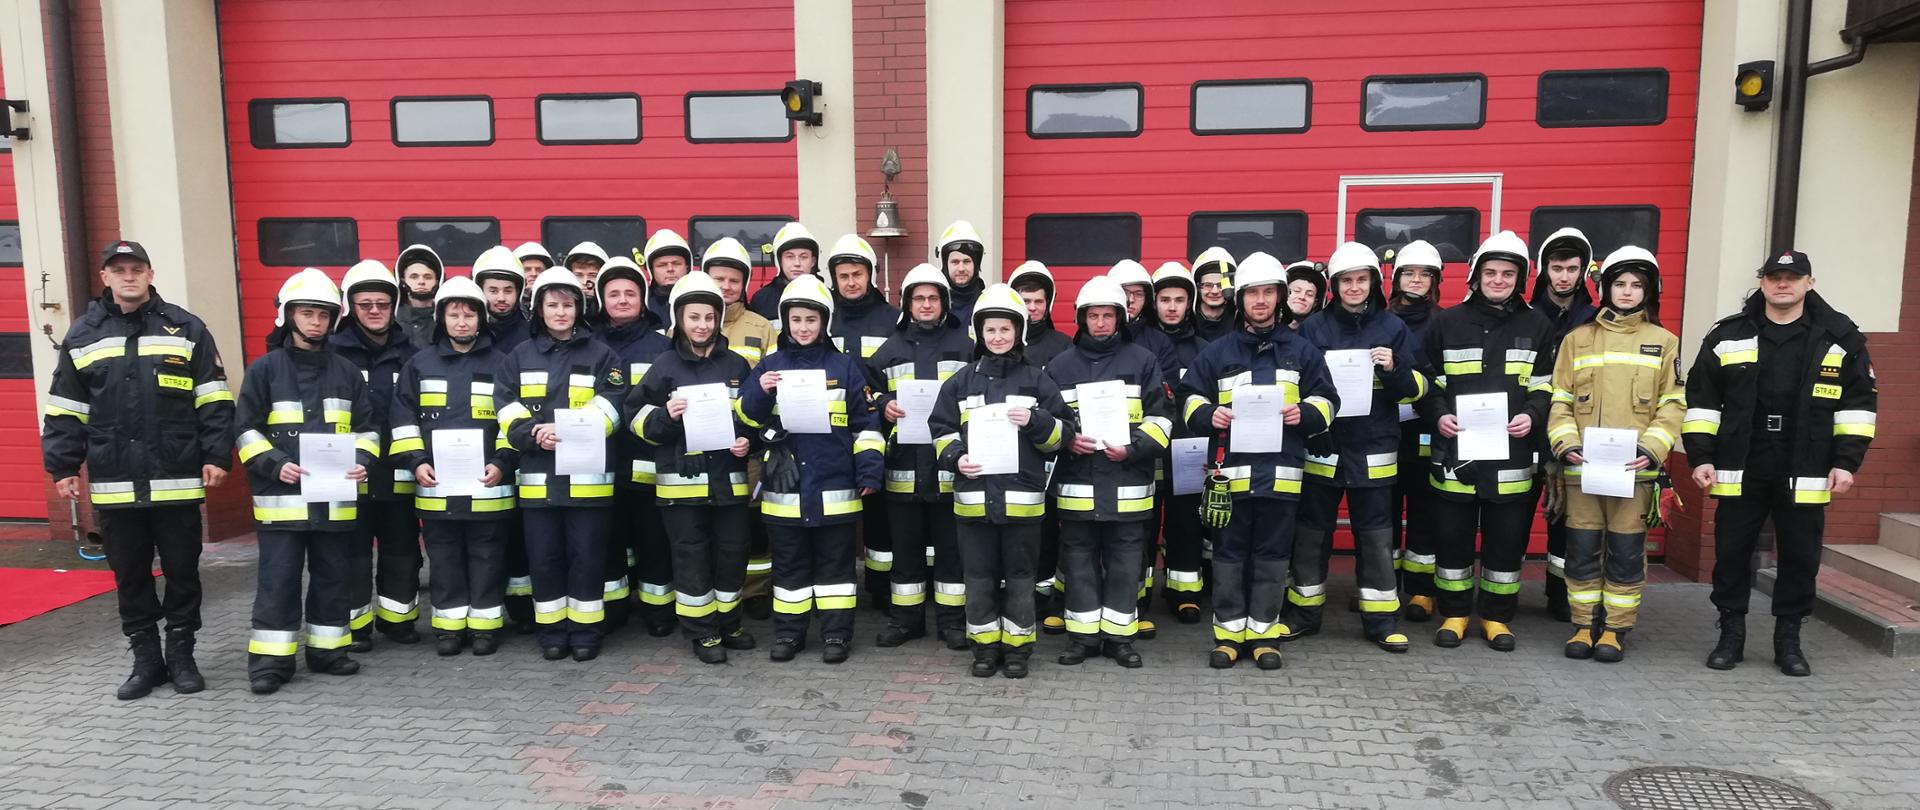 Kurs podstawowy OSP 2021 - zdjęcie grupowe po ukończeniu egzaminu. Strażacy stoją przed strażnicą Komendy trzymając w rękach dyplomy.